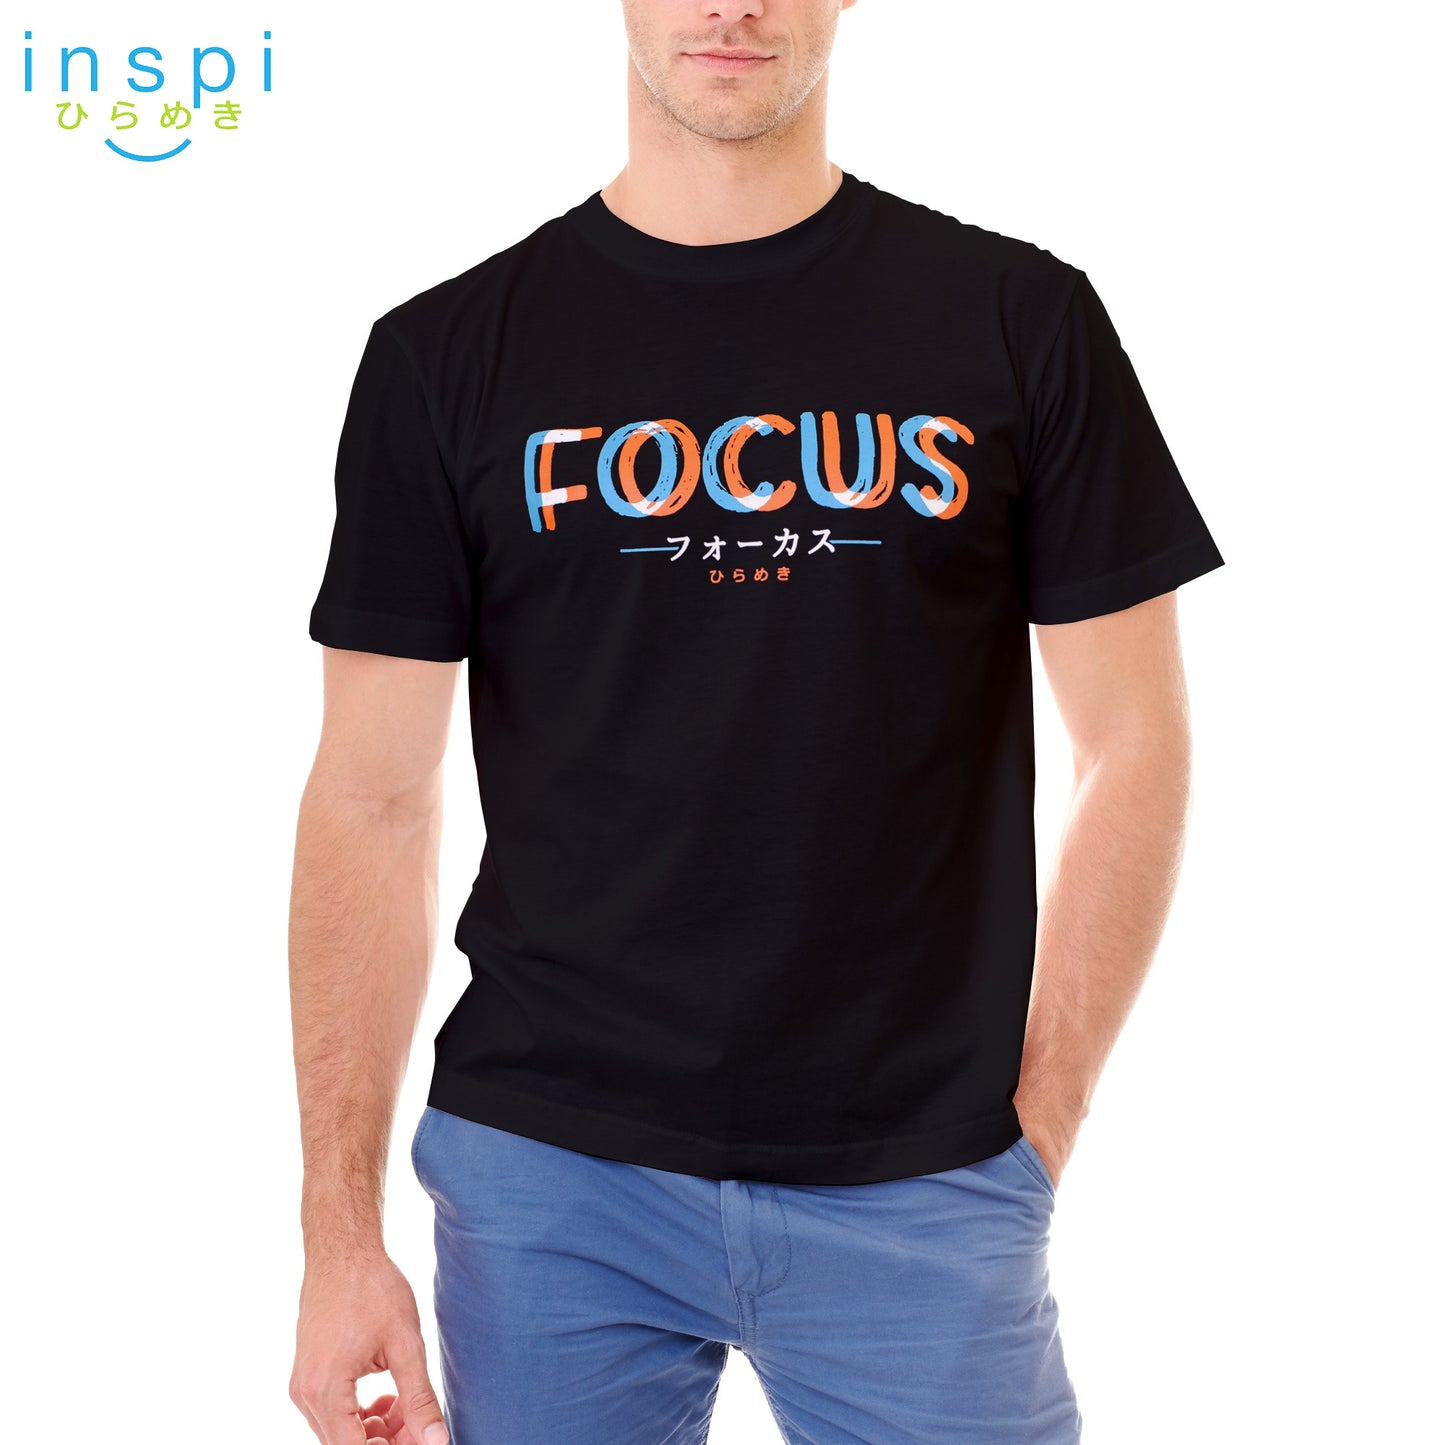 INSPI Tees Focus Graphic Tshirt